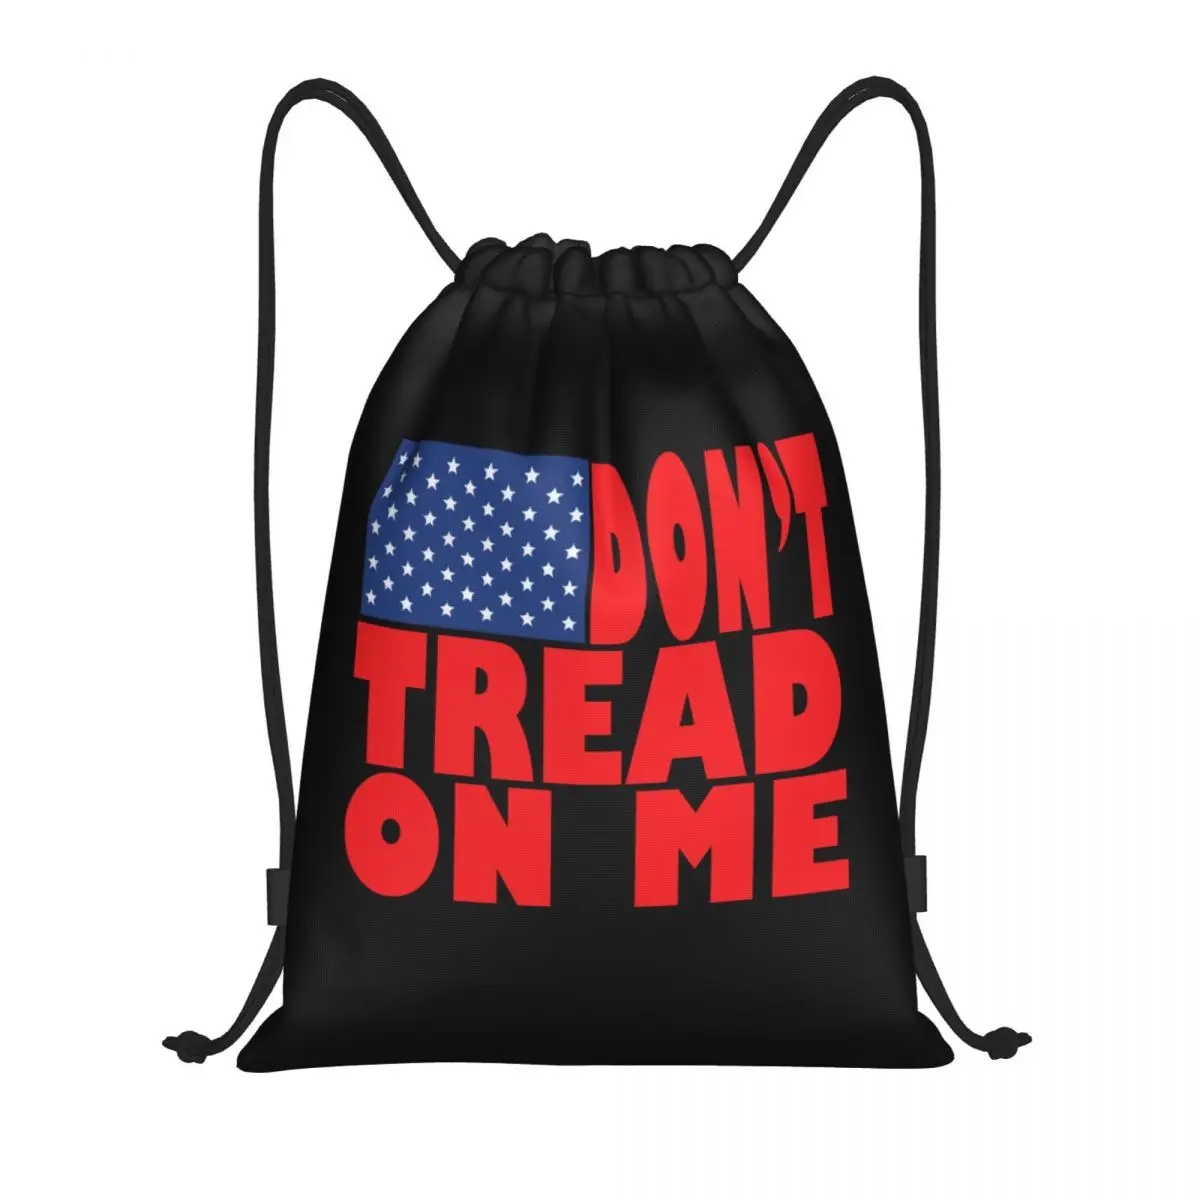 

Рюкзак на шнурке с флагом Don't Trade On Me, спортивная сумка для тренажерного зала для мужчин и женщин, тренировочный рюкзак